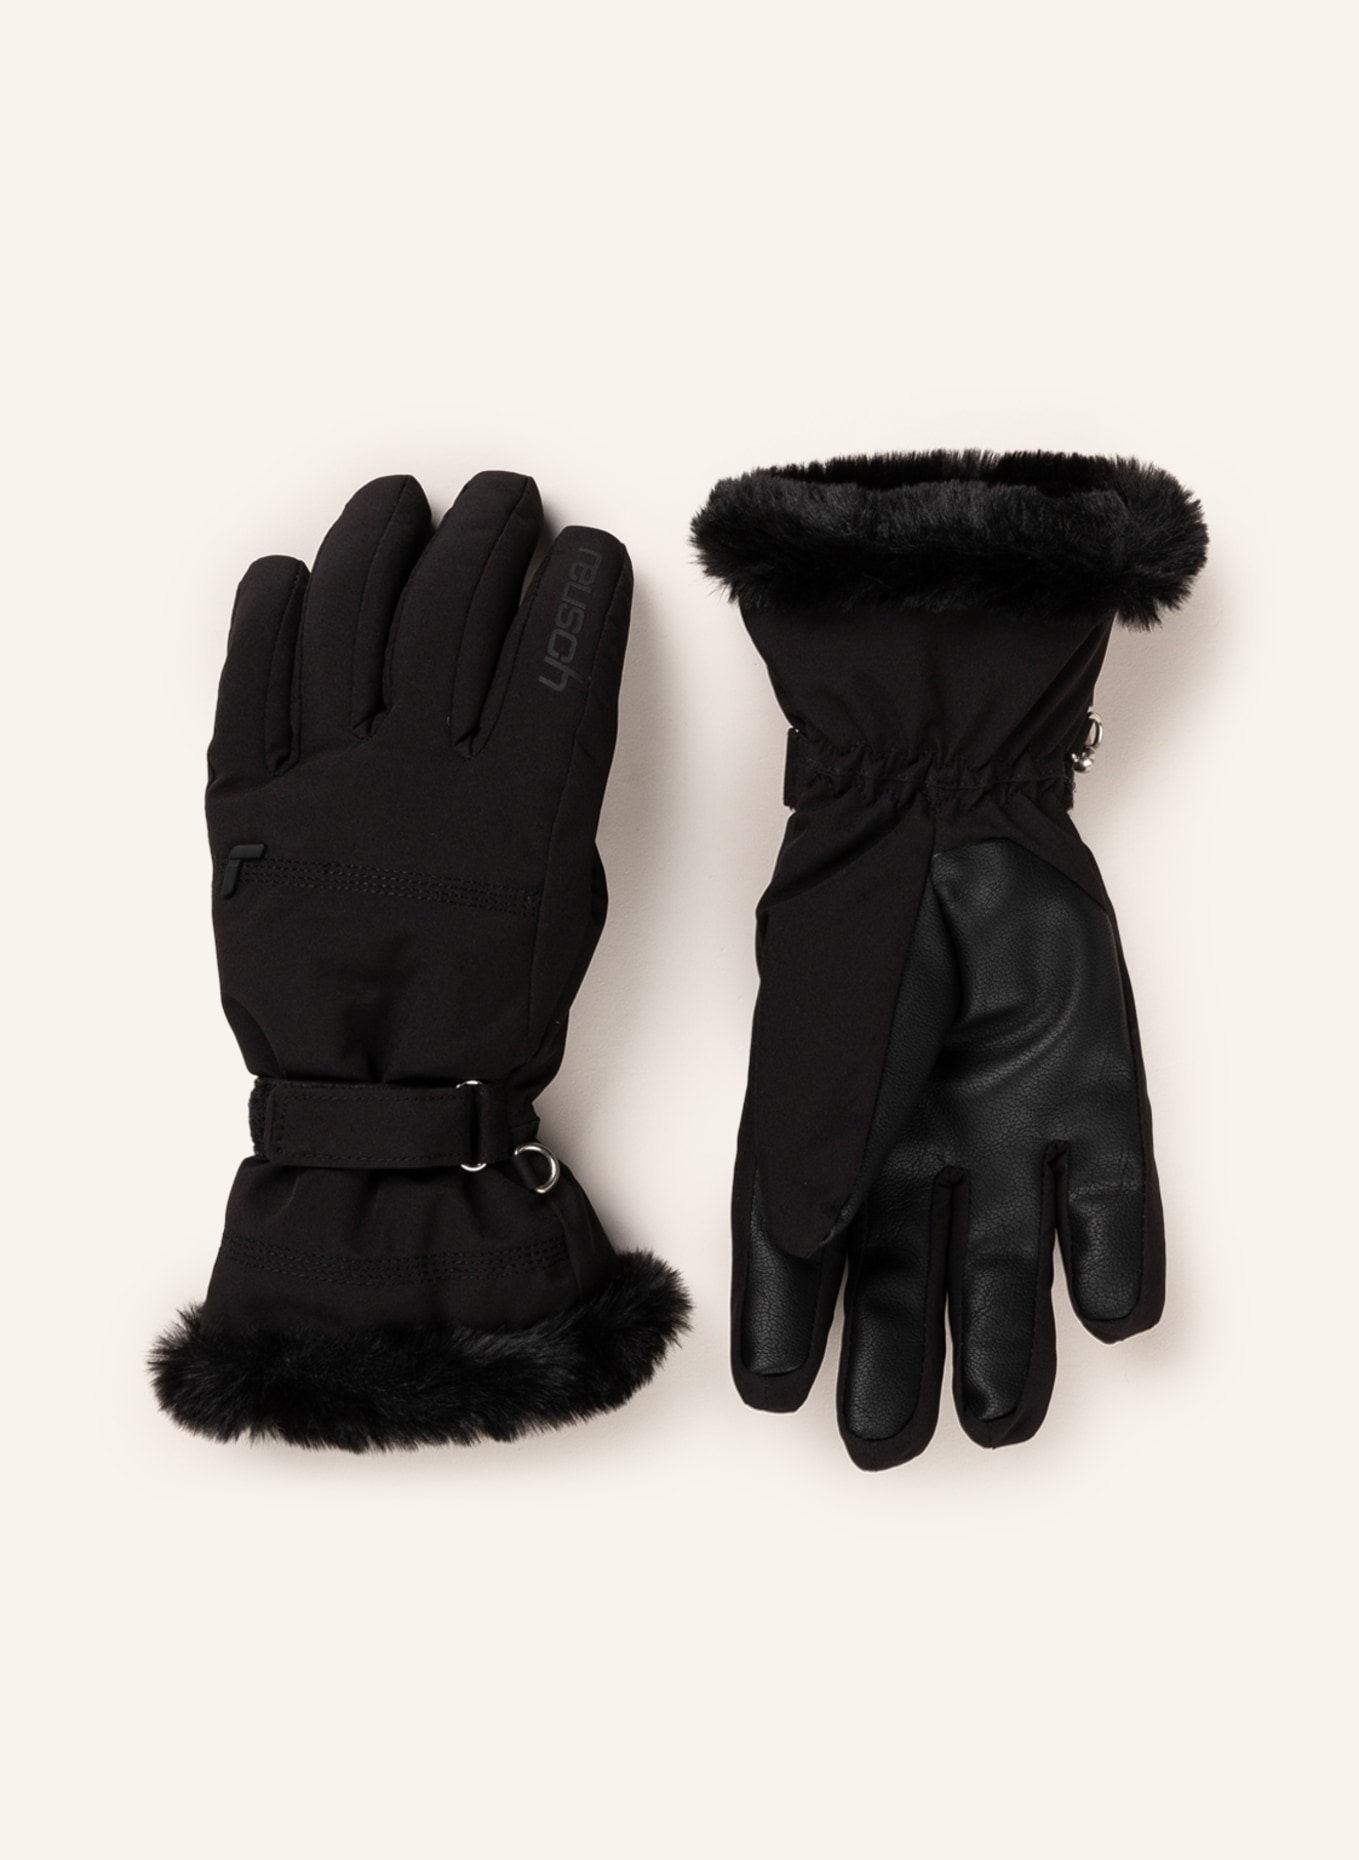 LUNA black R-TEX in gloves XT reusch Ski